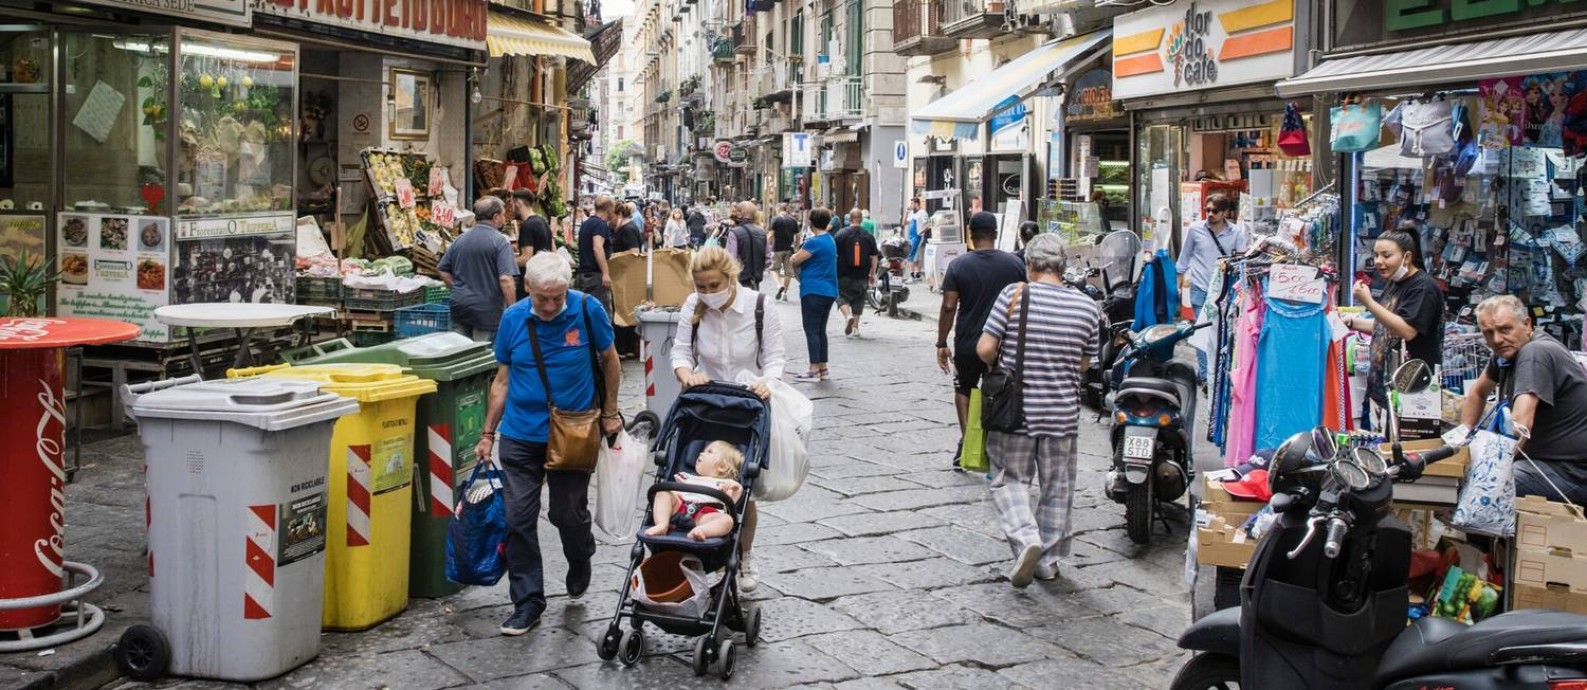 Italianos caminham por Nápoles, em 19 de junho Foto: Gianni Cipriano / New York Times